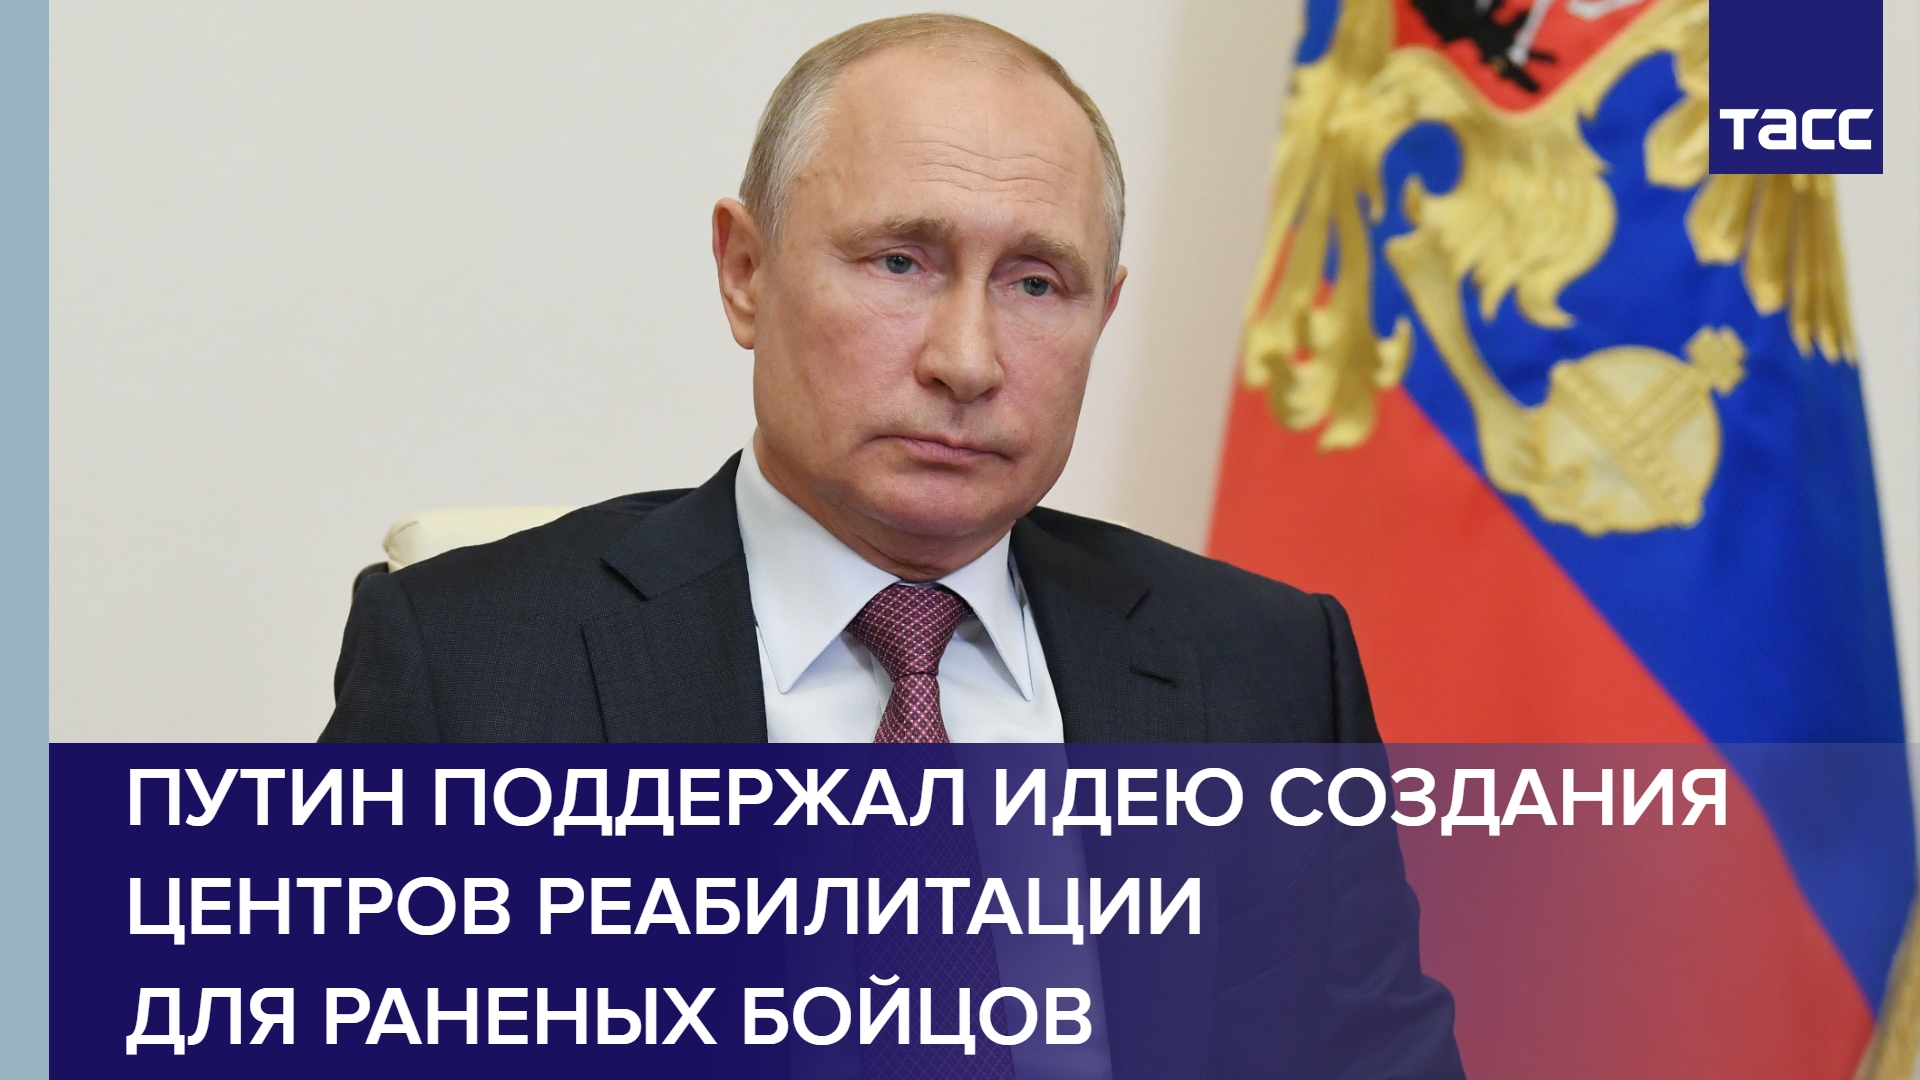 Путин поддержал идею создания центров реабилитации для раненых бойцов #медицина